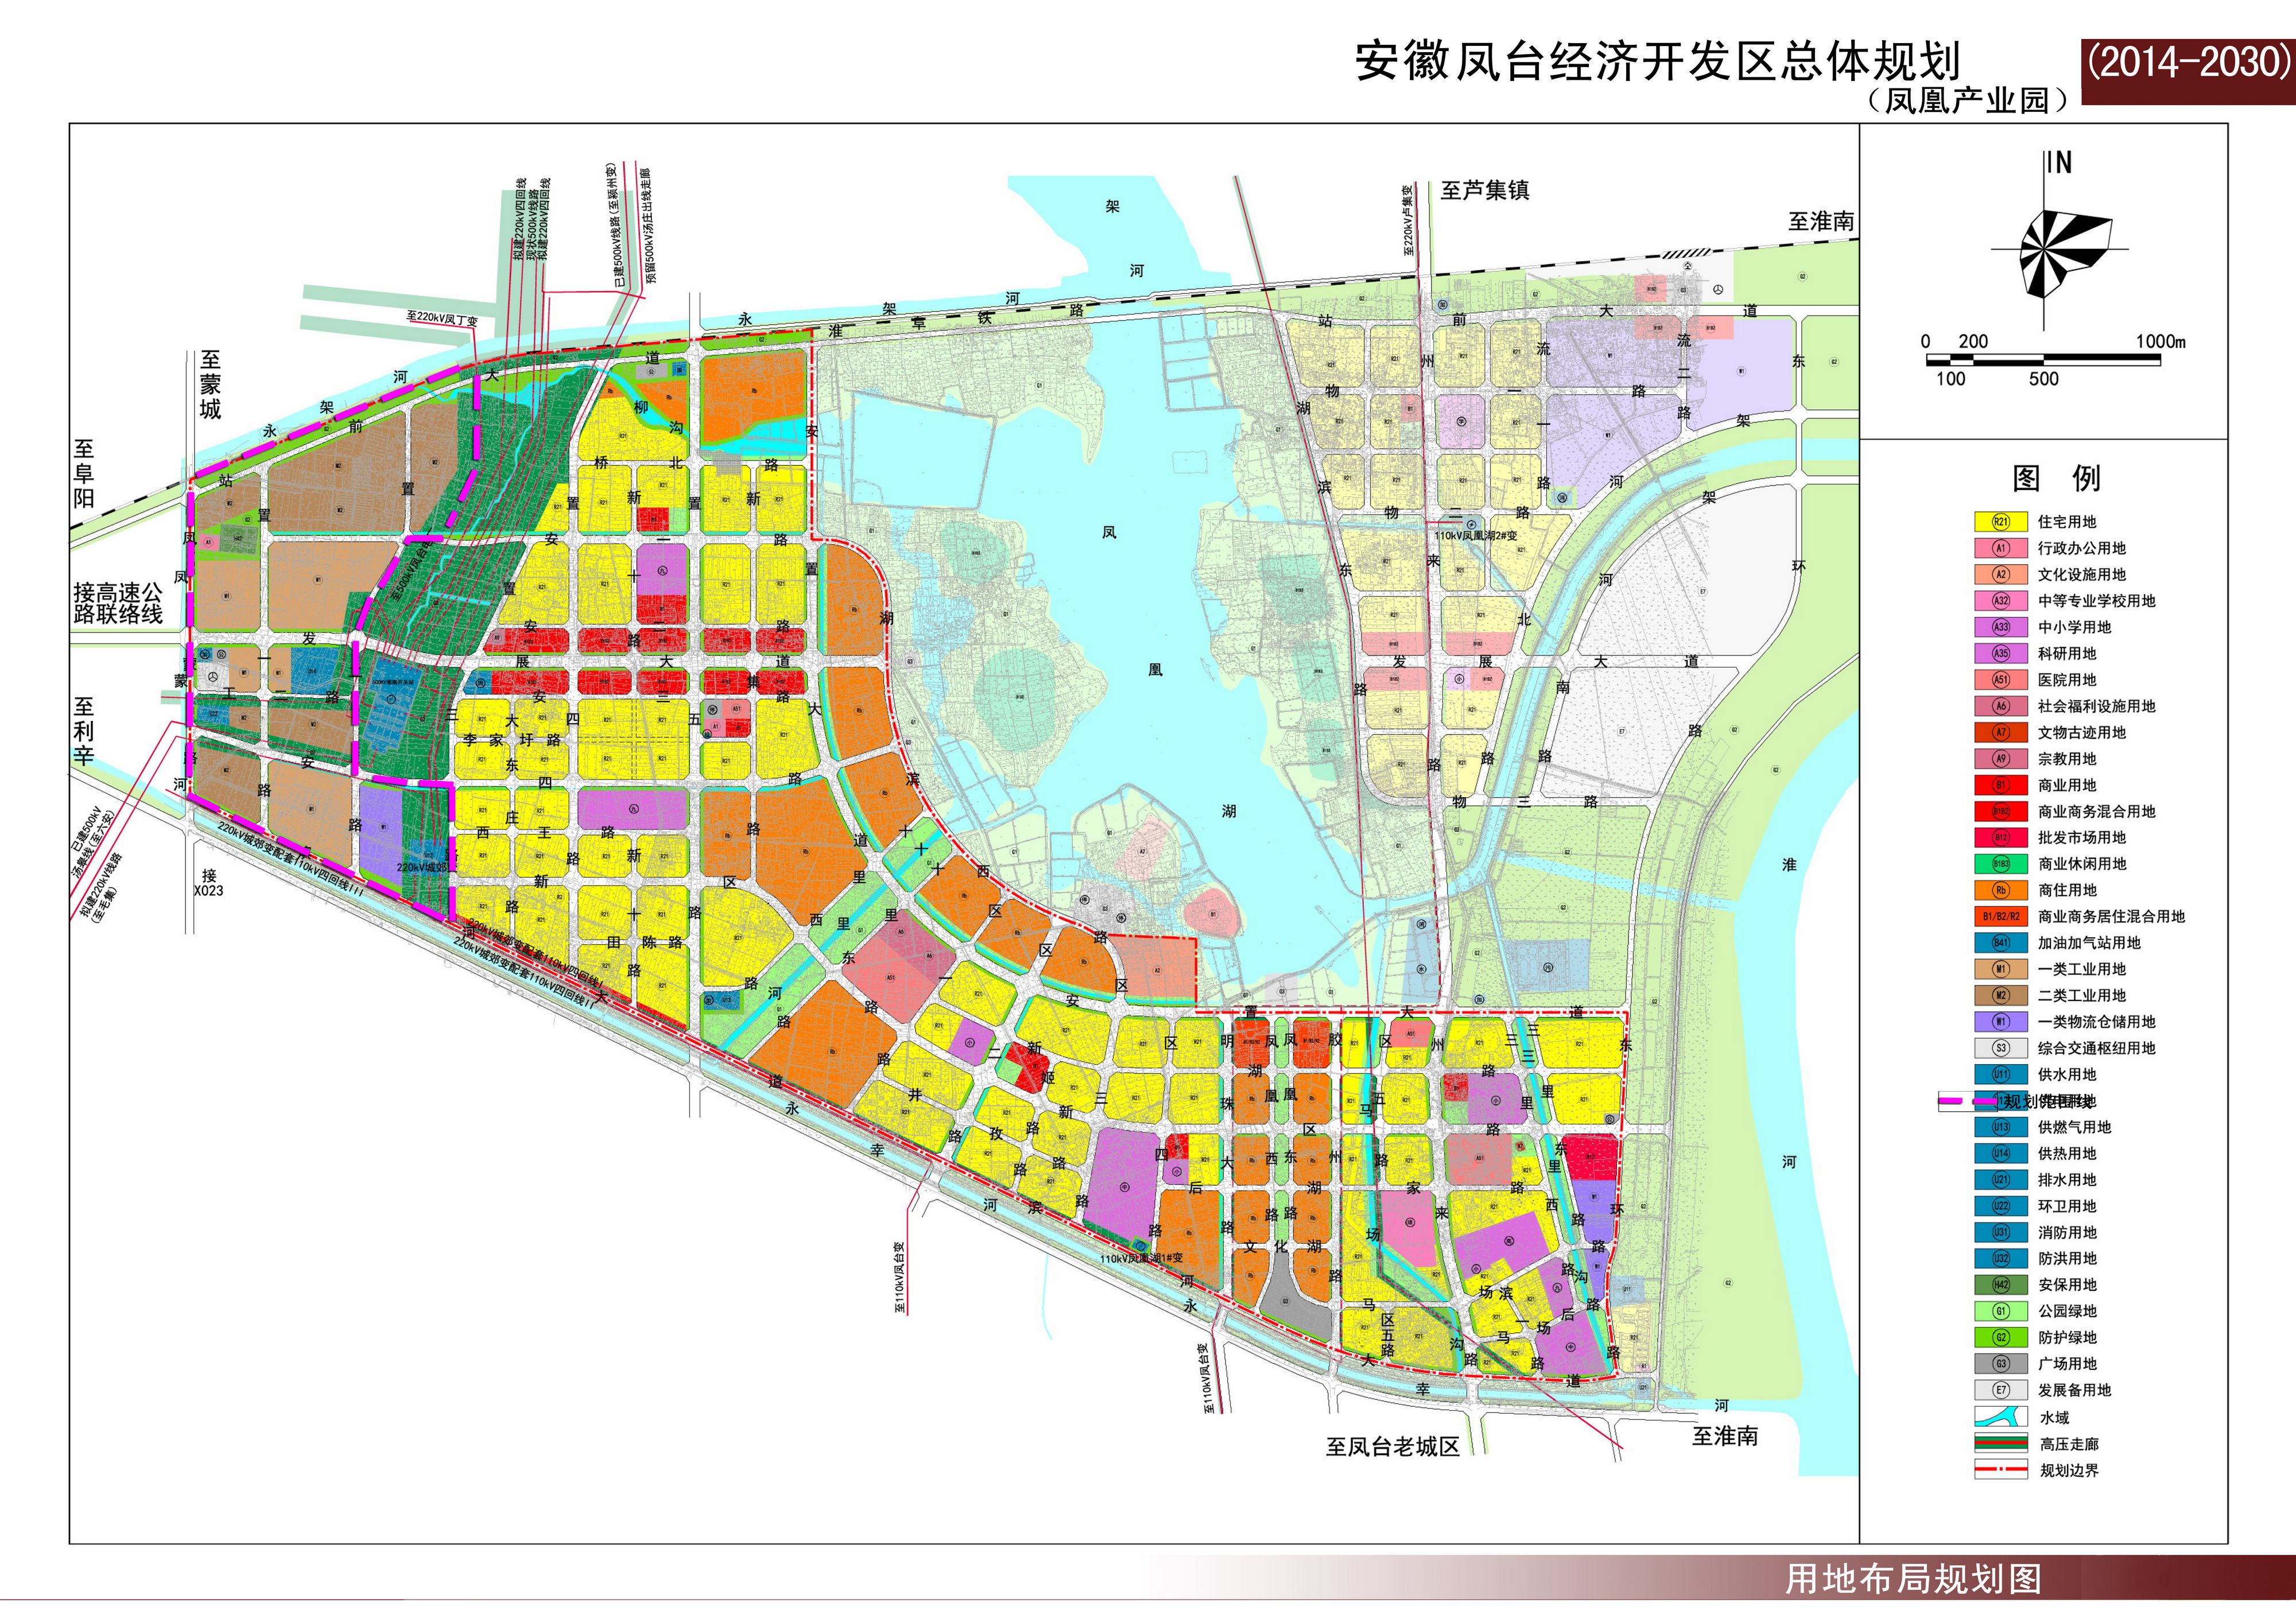 《安徽凤台经济开发区总体规划(2014-2030)》公示